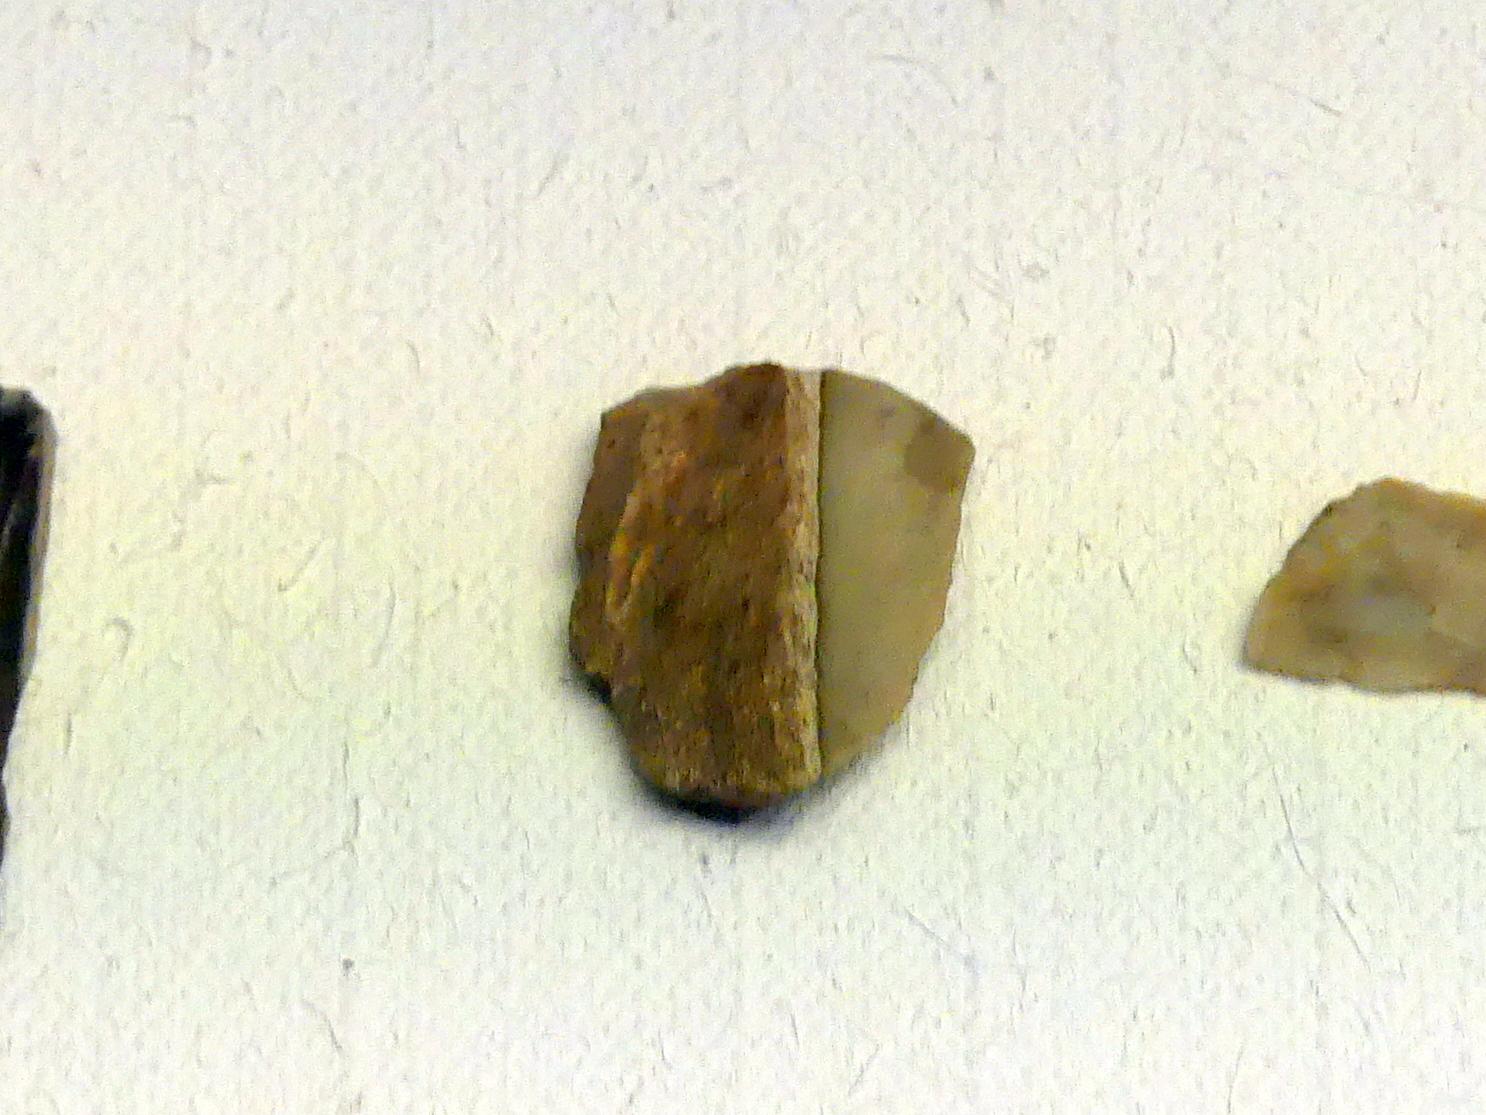 Kratzer, Frühneolithikum (Altneolithikum), 5500 - 4900 v. Chr., Bild 1/2